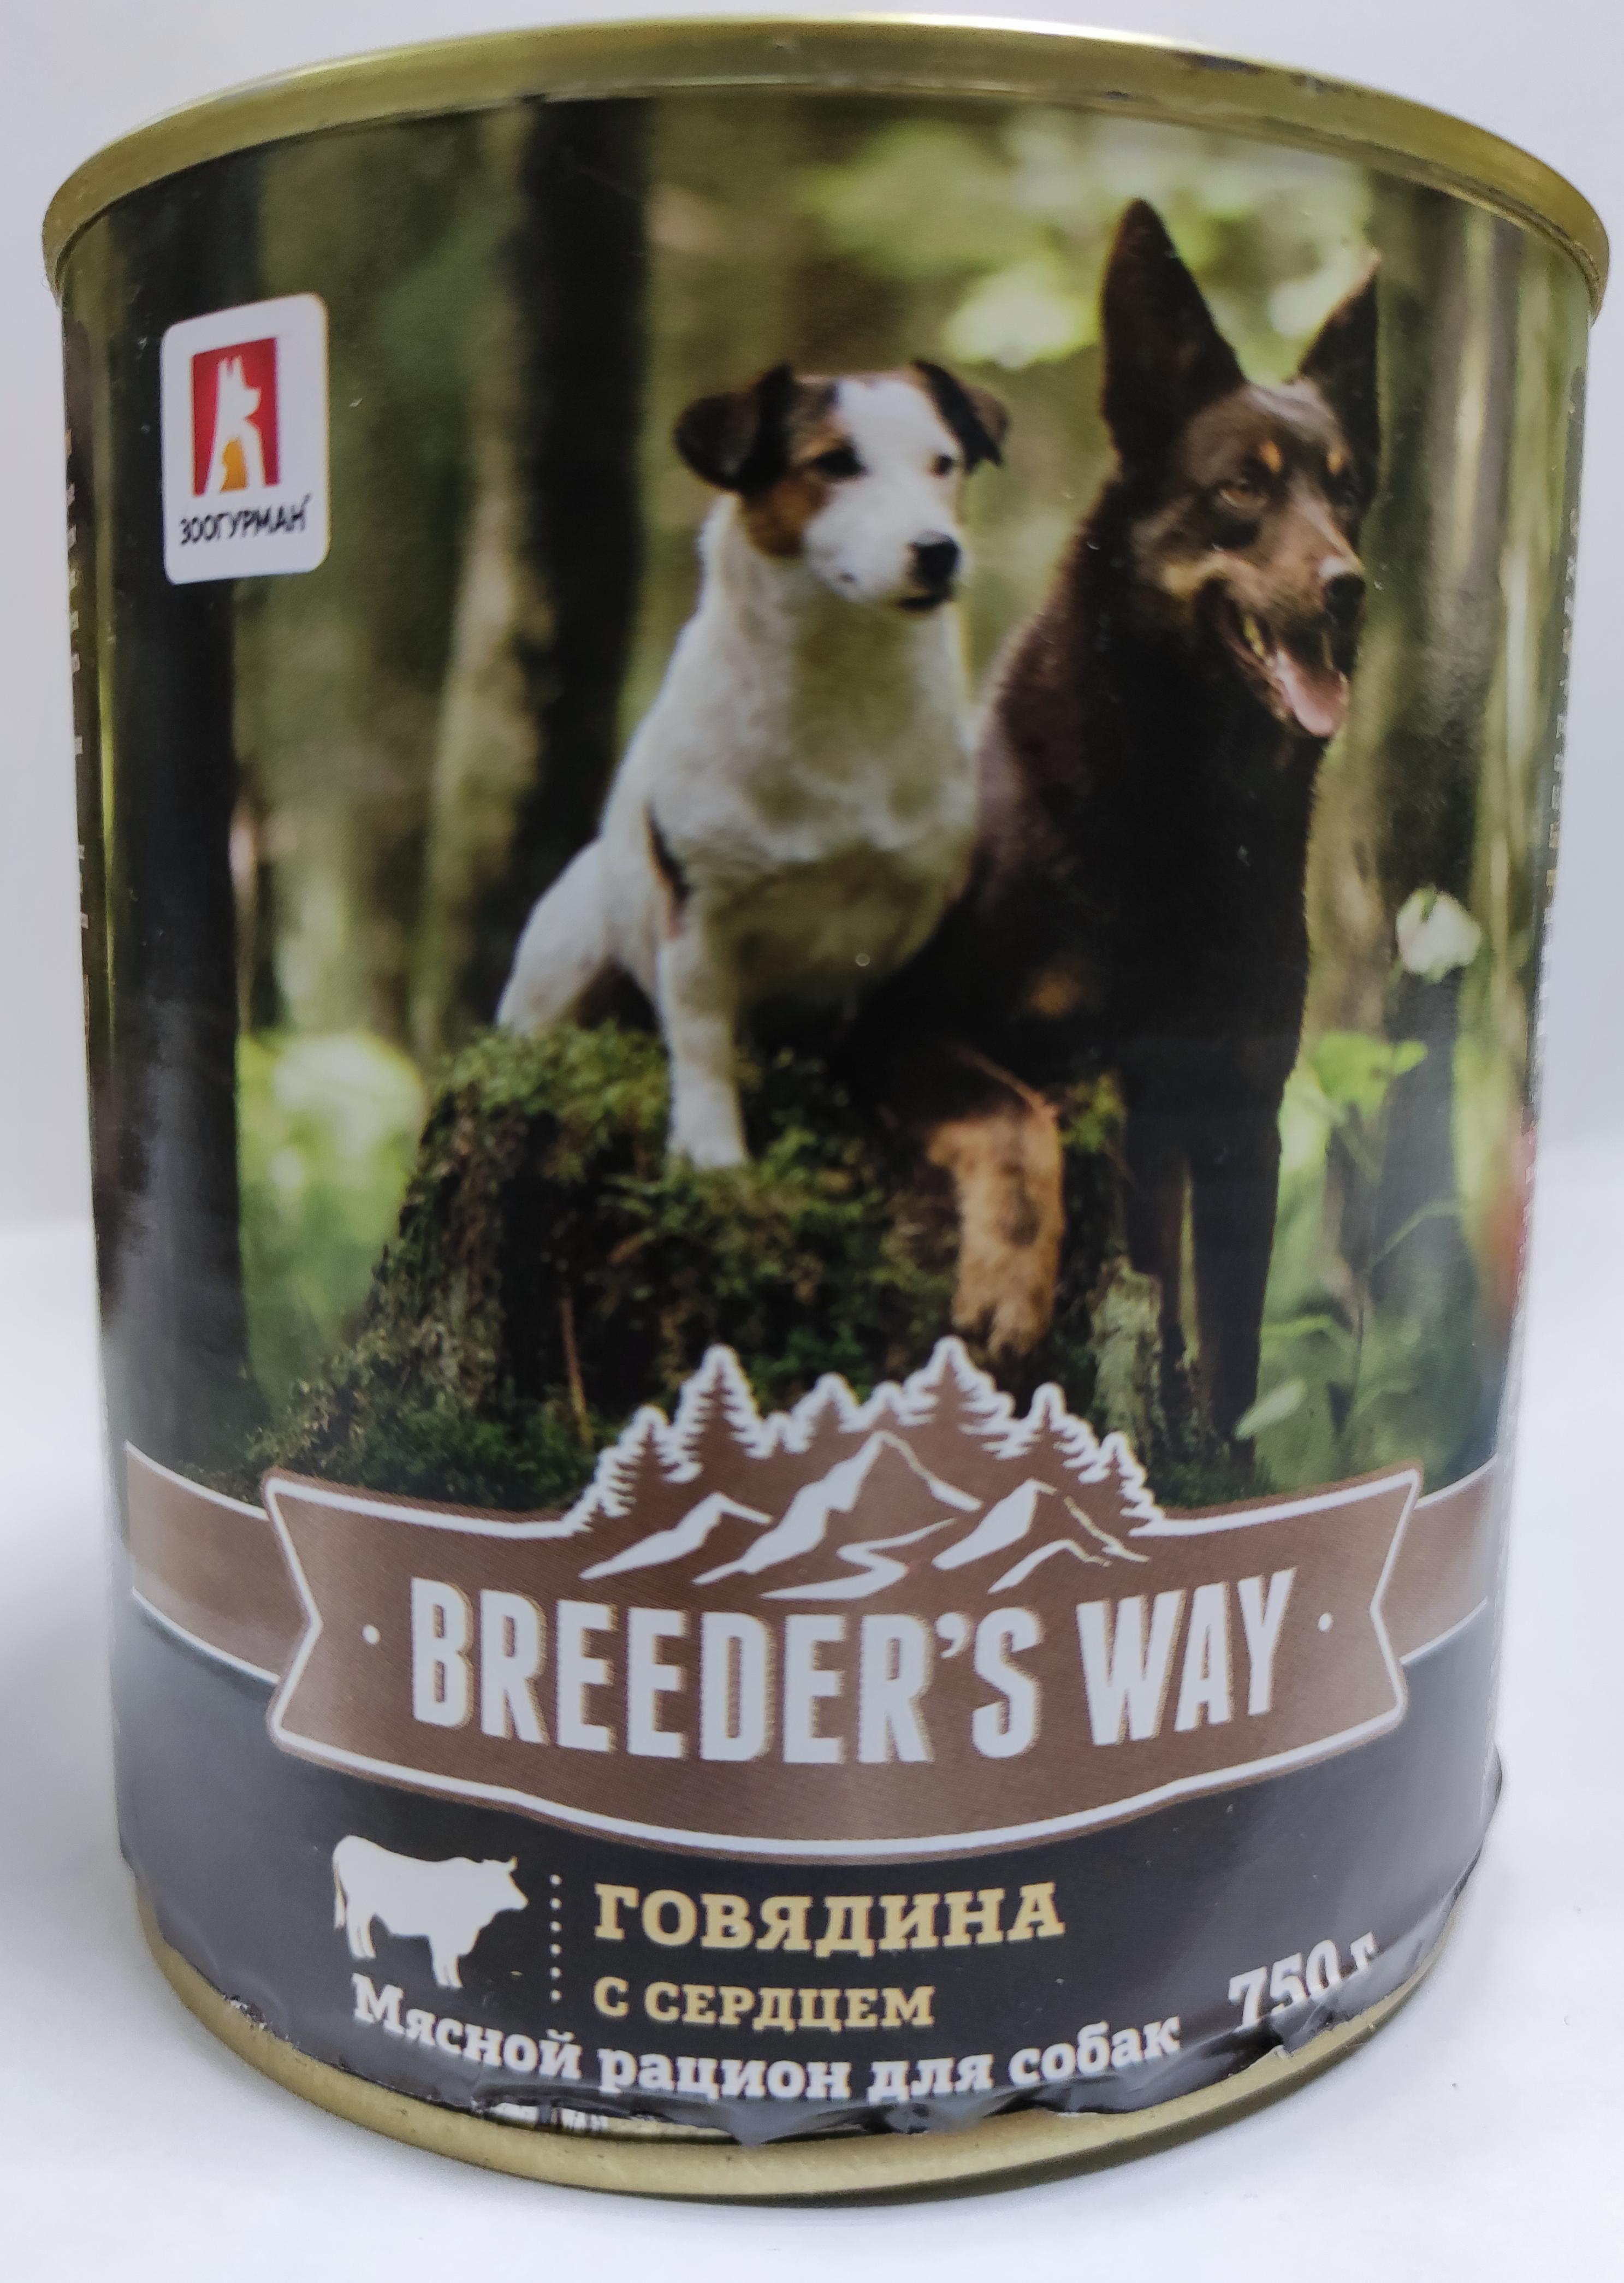 Breeder's Way консервы 750г с говядиной и сердцем для собак фото, цены, купить